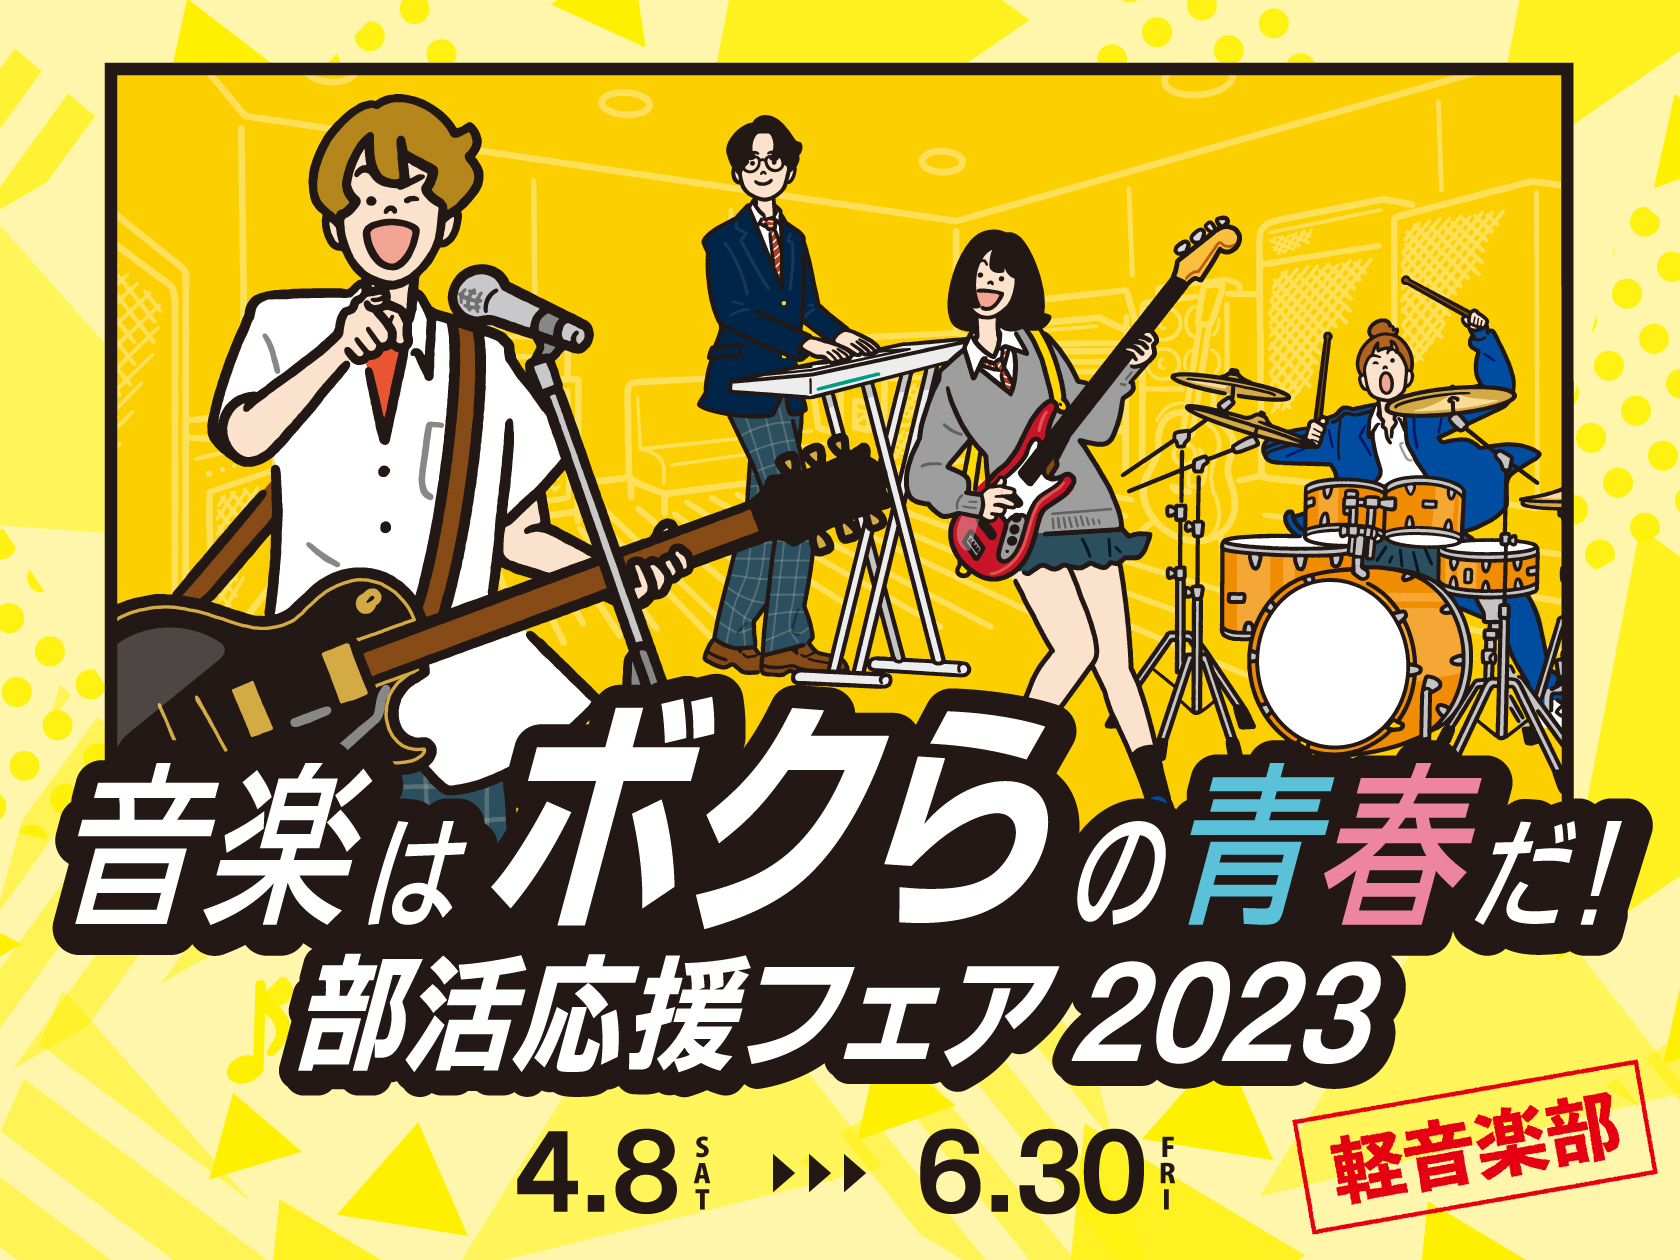 新軽音楽部員の皆様、ご入学おめでとうございます！！いよいよ憧れの軽音楽部、活動スタートですね？！ 自分の楽器が欲しいけどどんな楽器にしたらよいかわからない！という生徒さんも多いのではないでしょうか？そんな軽音楽部員の方のためにこの度、川口駅前島村楽器かわぐちキャスティ店では、ギター上級アドバイザーで […]